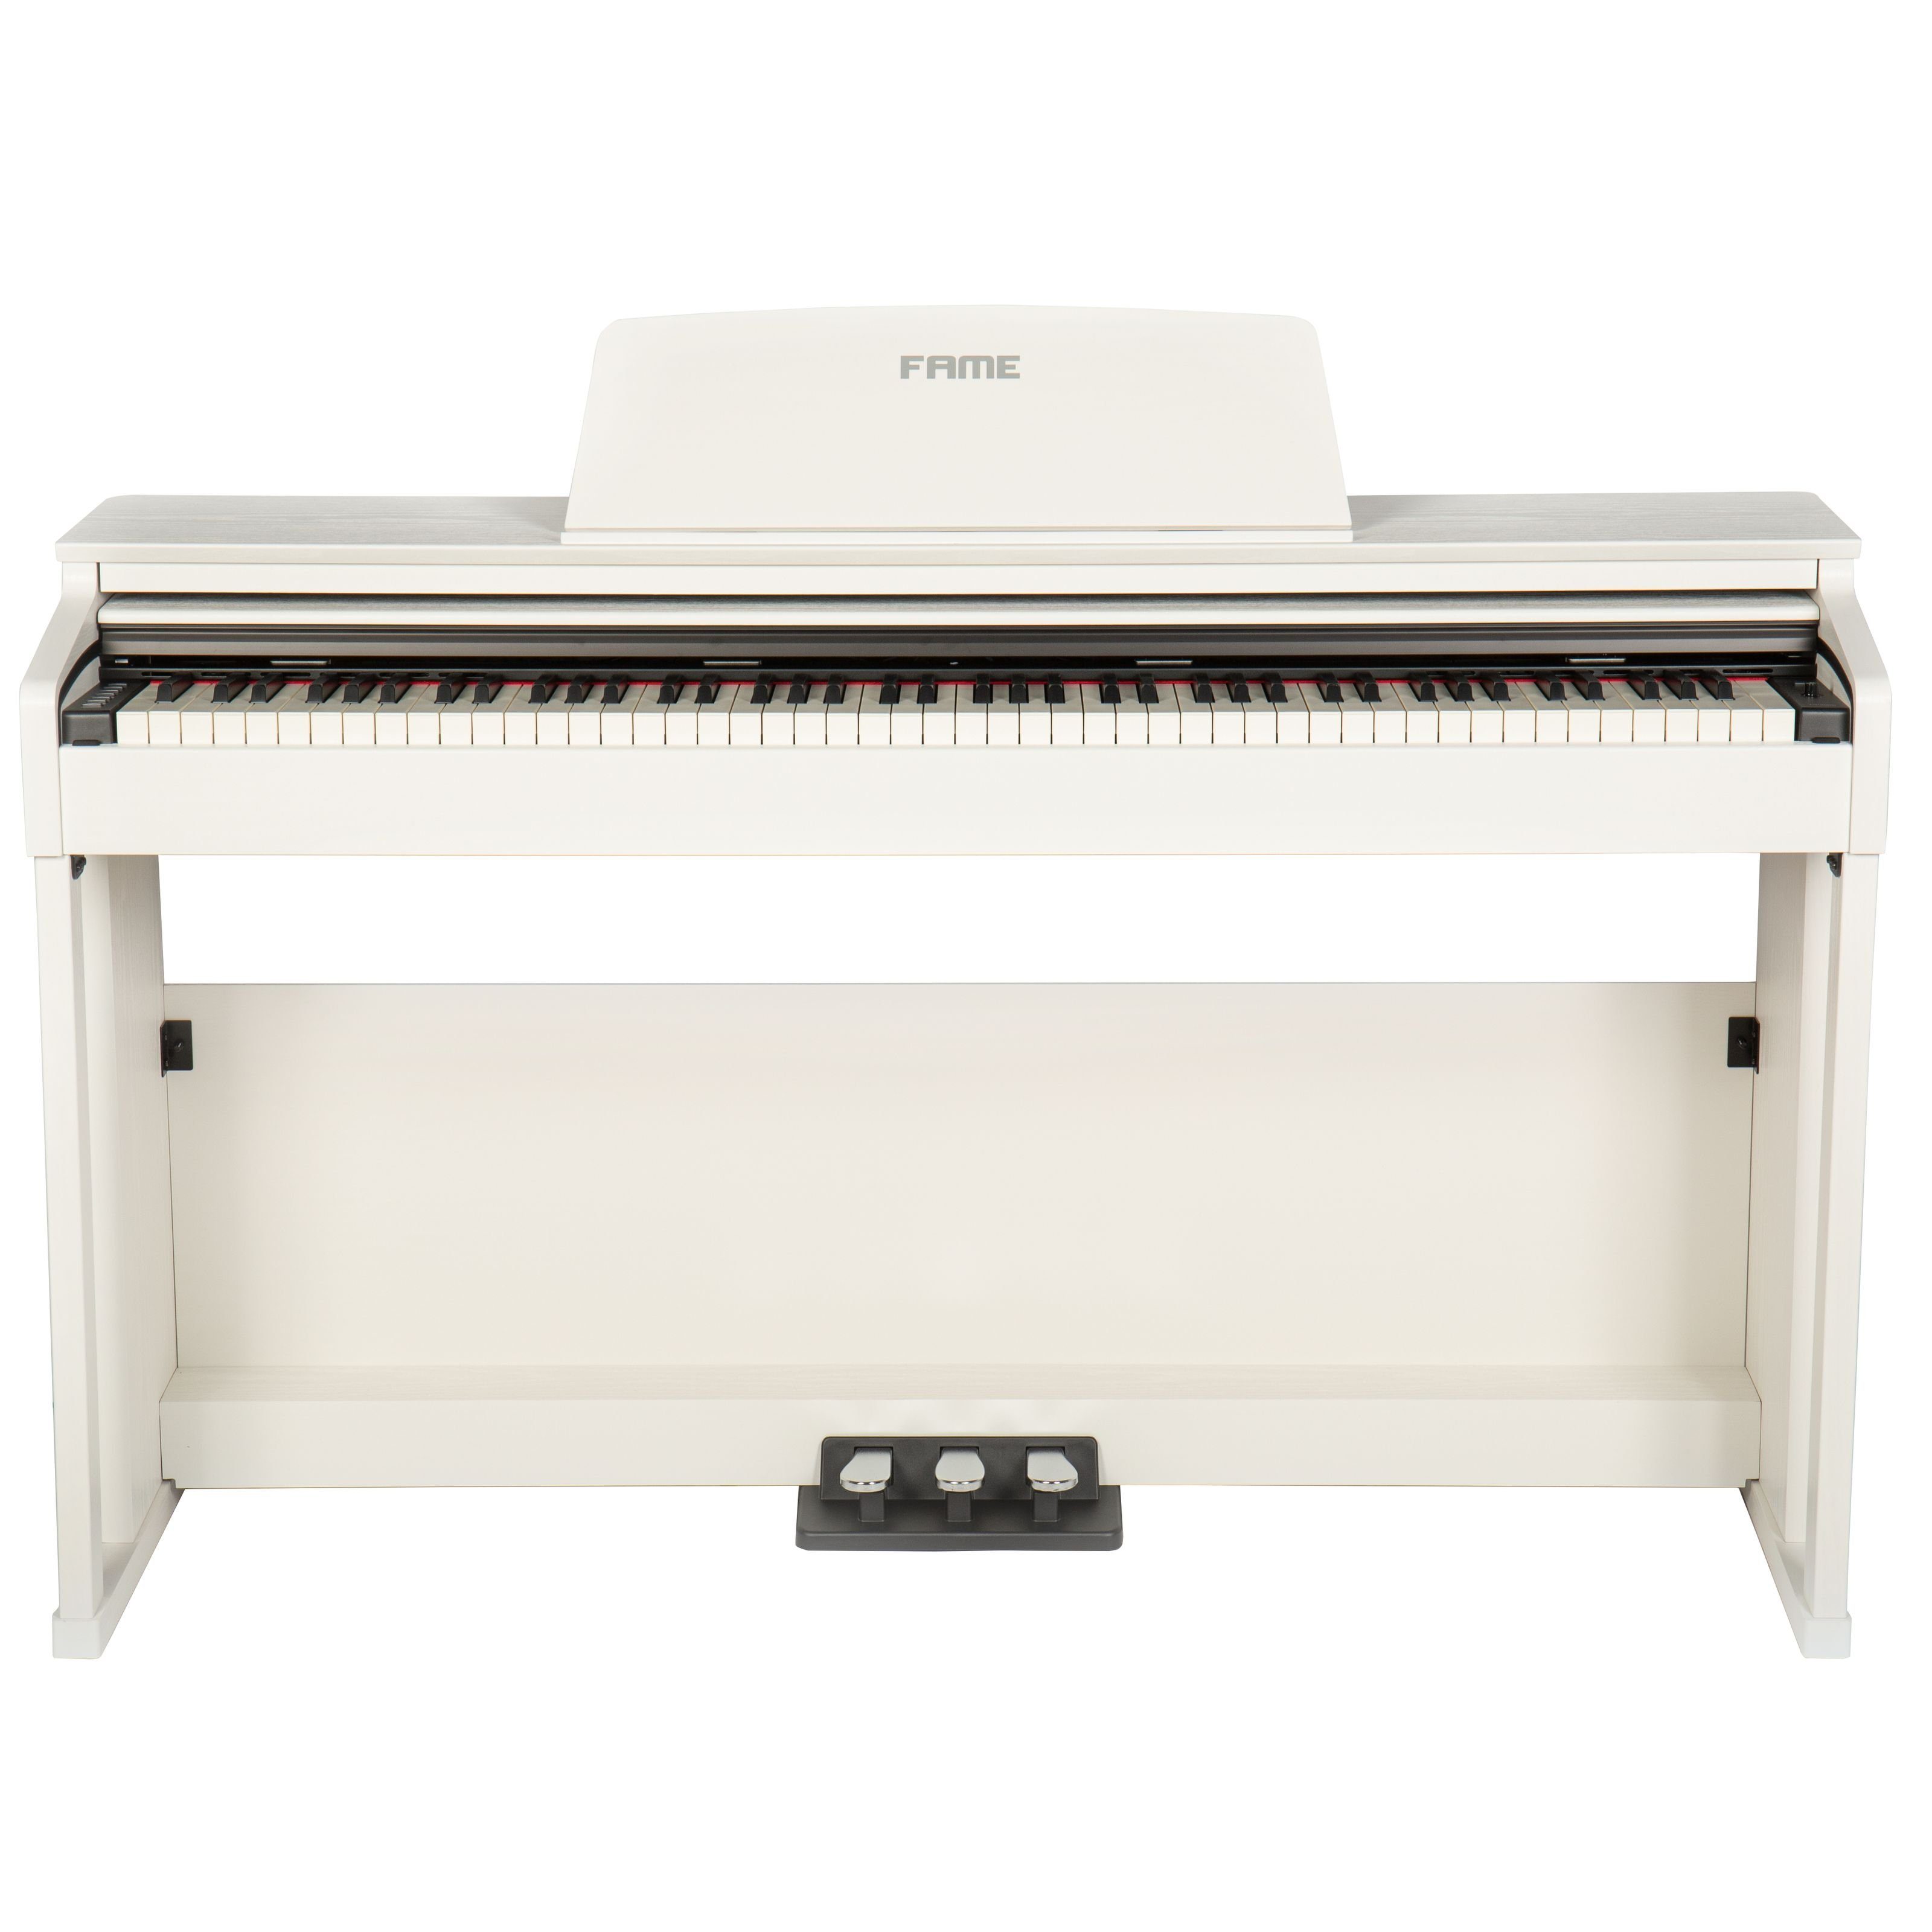 FAME Digitalpiano, DP-3000 E-Piano mit Hammermechanik, anschlagdynamischen  88 Tasten, voller Klavierklang, 20 Orchesterklangfarben, 128-fache  Polyphonie, wertiges Gehäuse mit Deckel und Konsolen, Digital Piano online  kaufen | OTTO